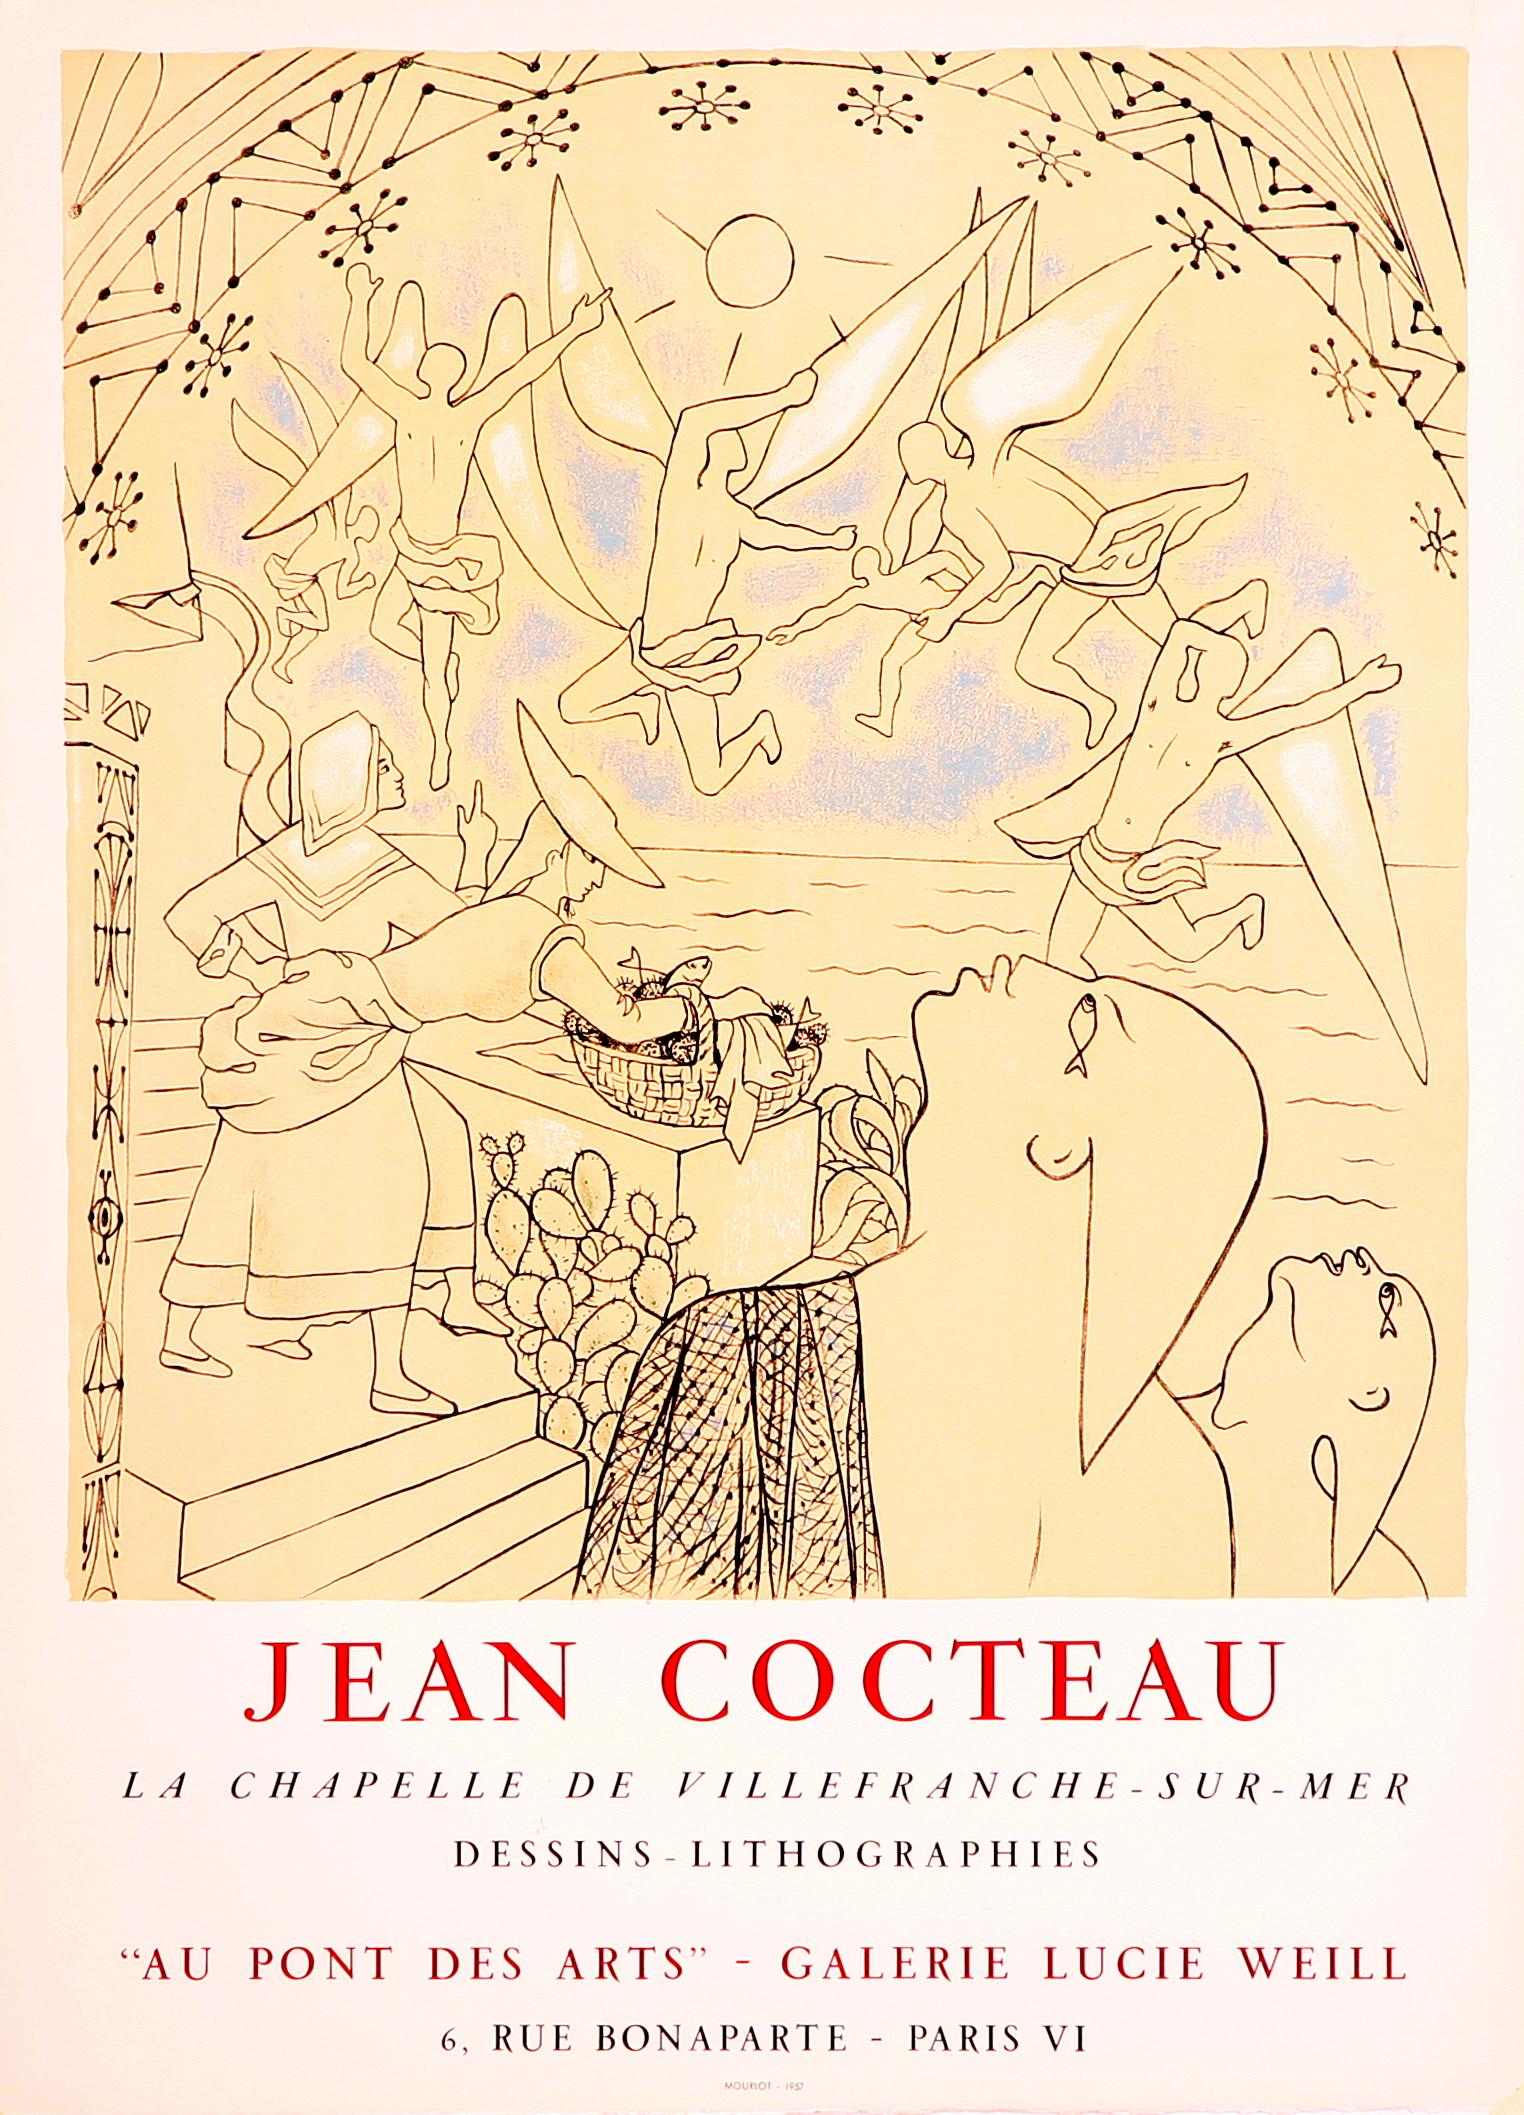 "Kunst ist eine Fata Morgana des Bewussten und des Unbewussten".
-Jean Cocteau

Dieses originale lithografische Plakat von Jean Cocteau wurde für eine Ausstellung von Werken im Zusammenhang mit seinem Projekt in der Kapelle von Saint-Peters in